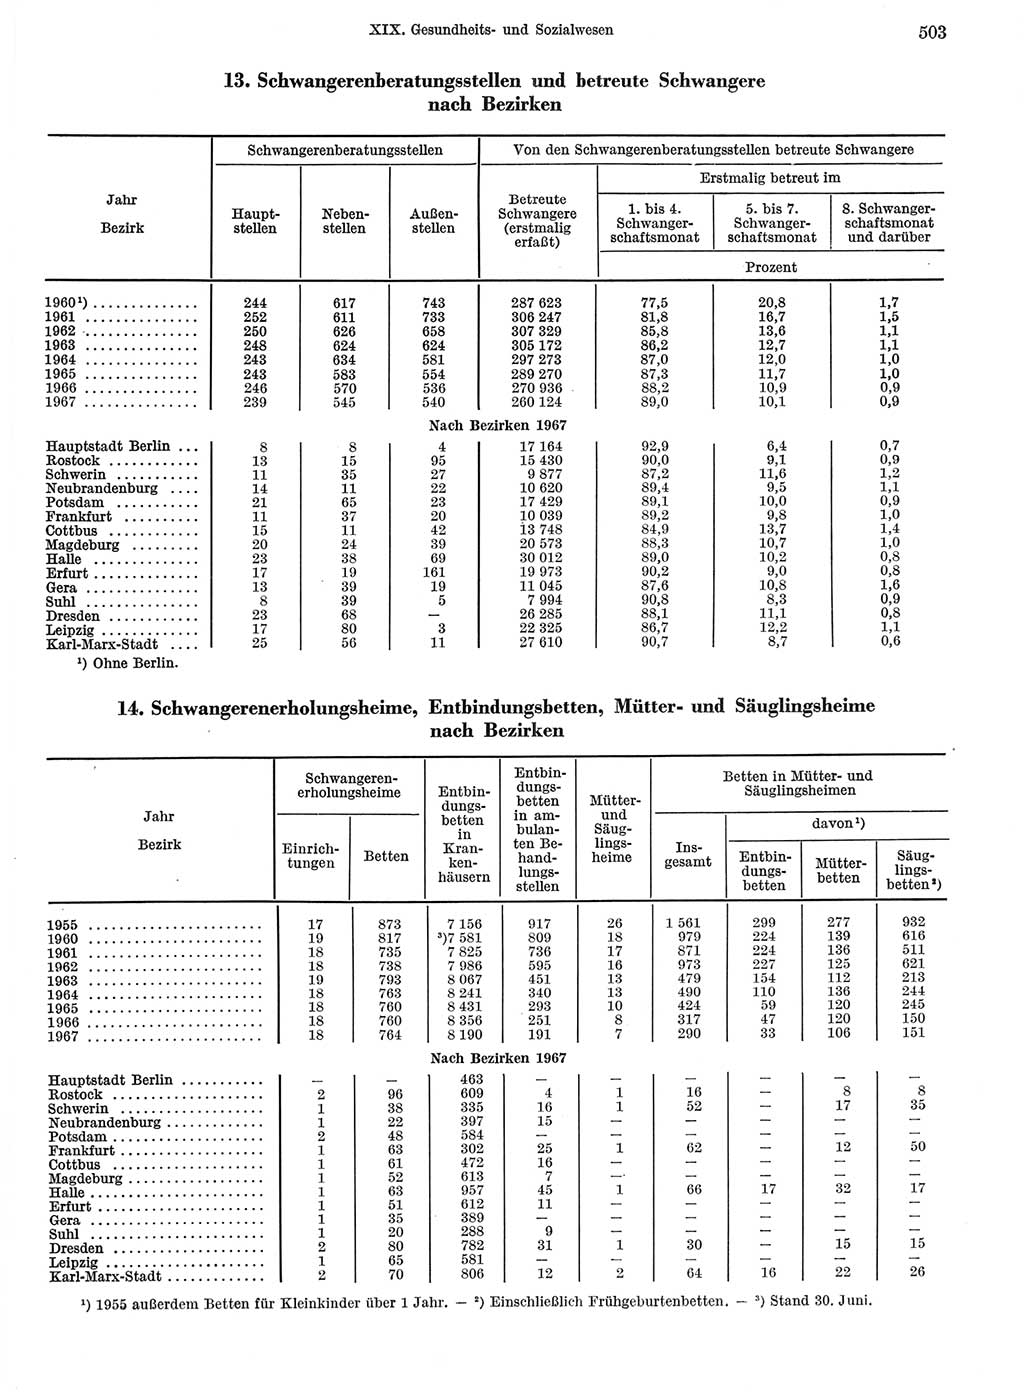 Statistisches Jahrbuch der Deutschen Demokratischen Republik (DDR) 1968, Seite 503 (Stat. Jb. DDR 1968, S. 503)